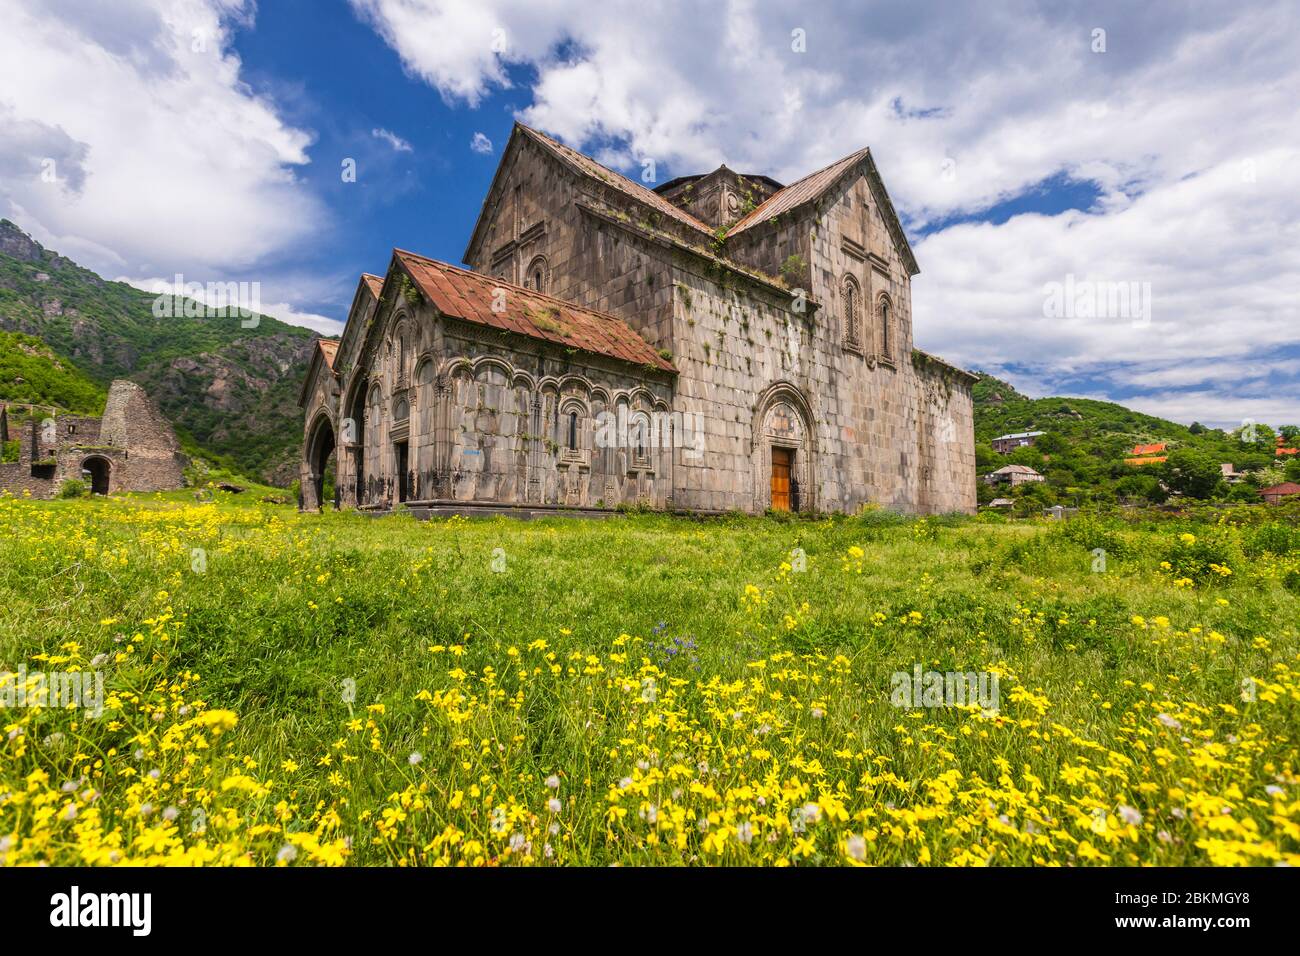 Monastère d'Akhtala, église arménienne, complexe de monastère médiéval, Akhtala, province de Lori, Arménie, Caucase, Asie Banque D'Images